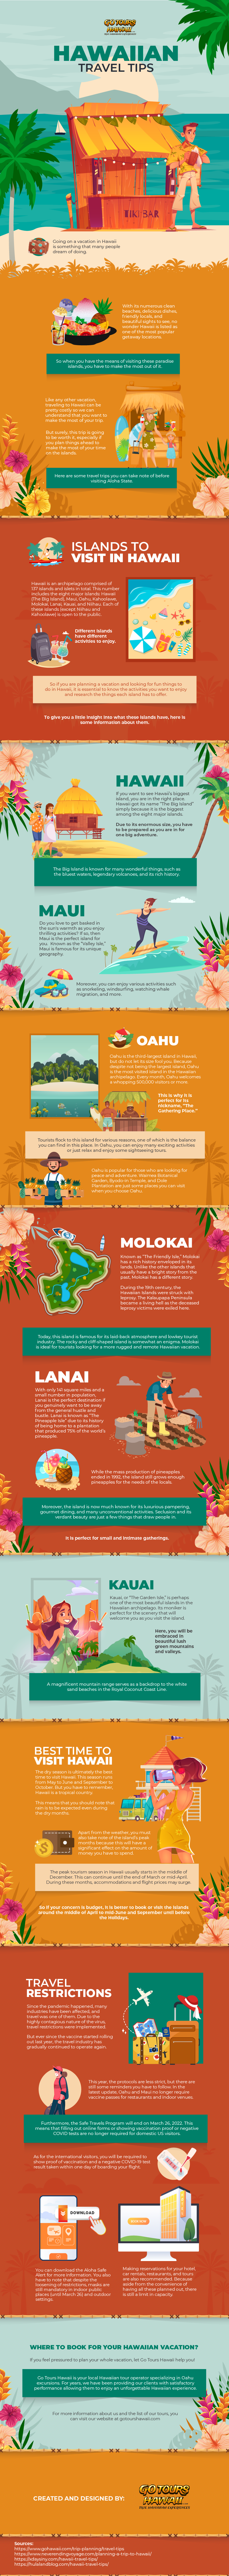 Hawaiian Travel Tips - Infographic ImageFE106w5e